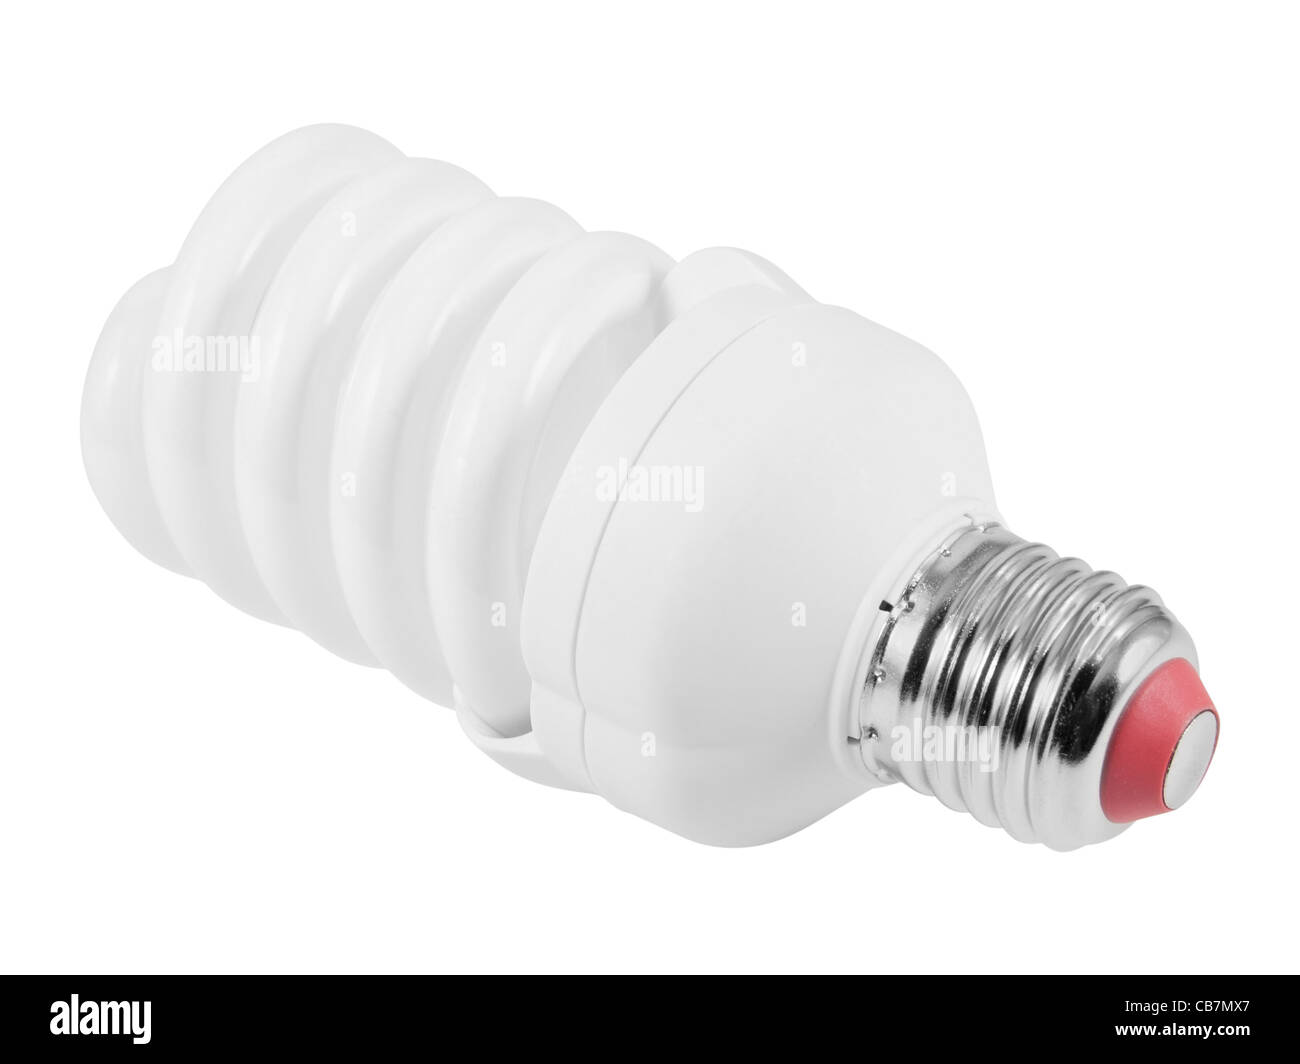 Bombilla fluorescente de ahorro de energía (CFL E27 socket). Aislado sobre fondo blanco con trazado de recorte. Foto de stock